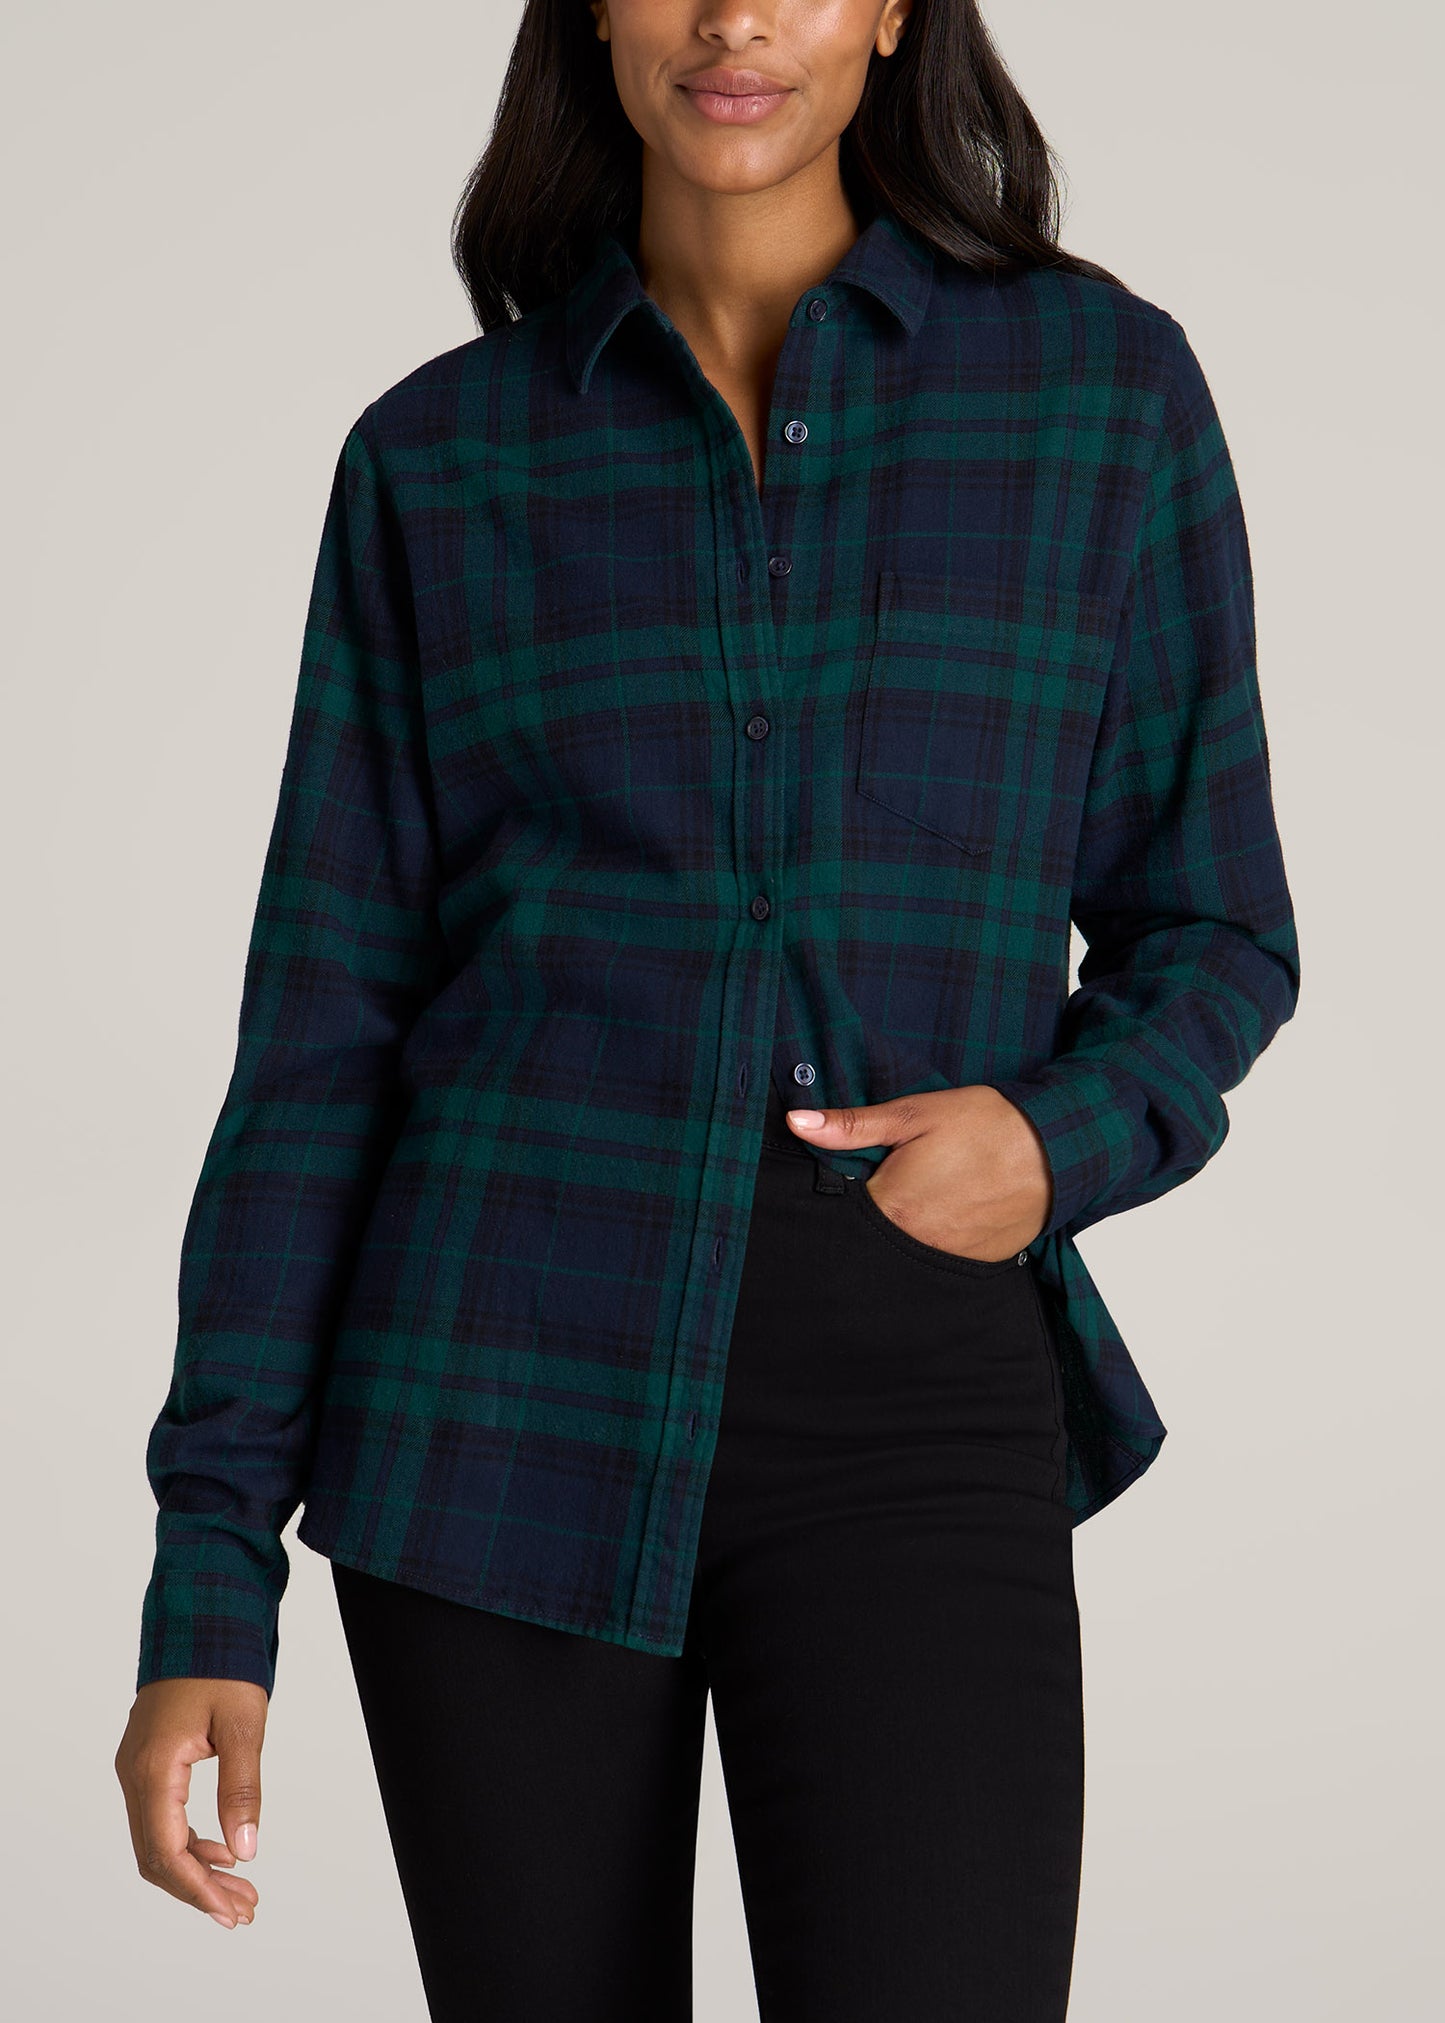 https://americantall.com/cdn/shop/files/American-Tall-Women-Flannel-Button-up-Shirt-Emerald-Navy-front_1445x.jpg?v=1686325932